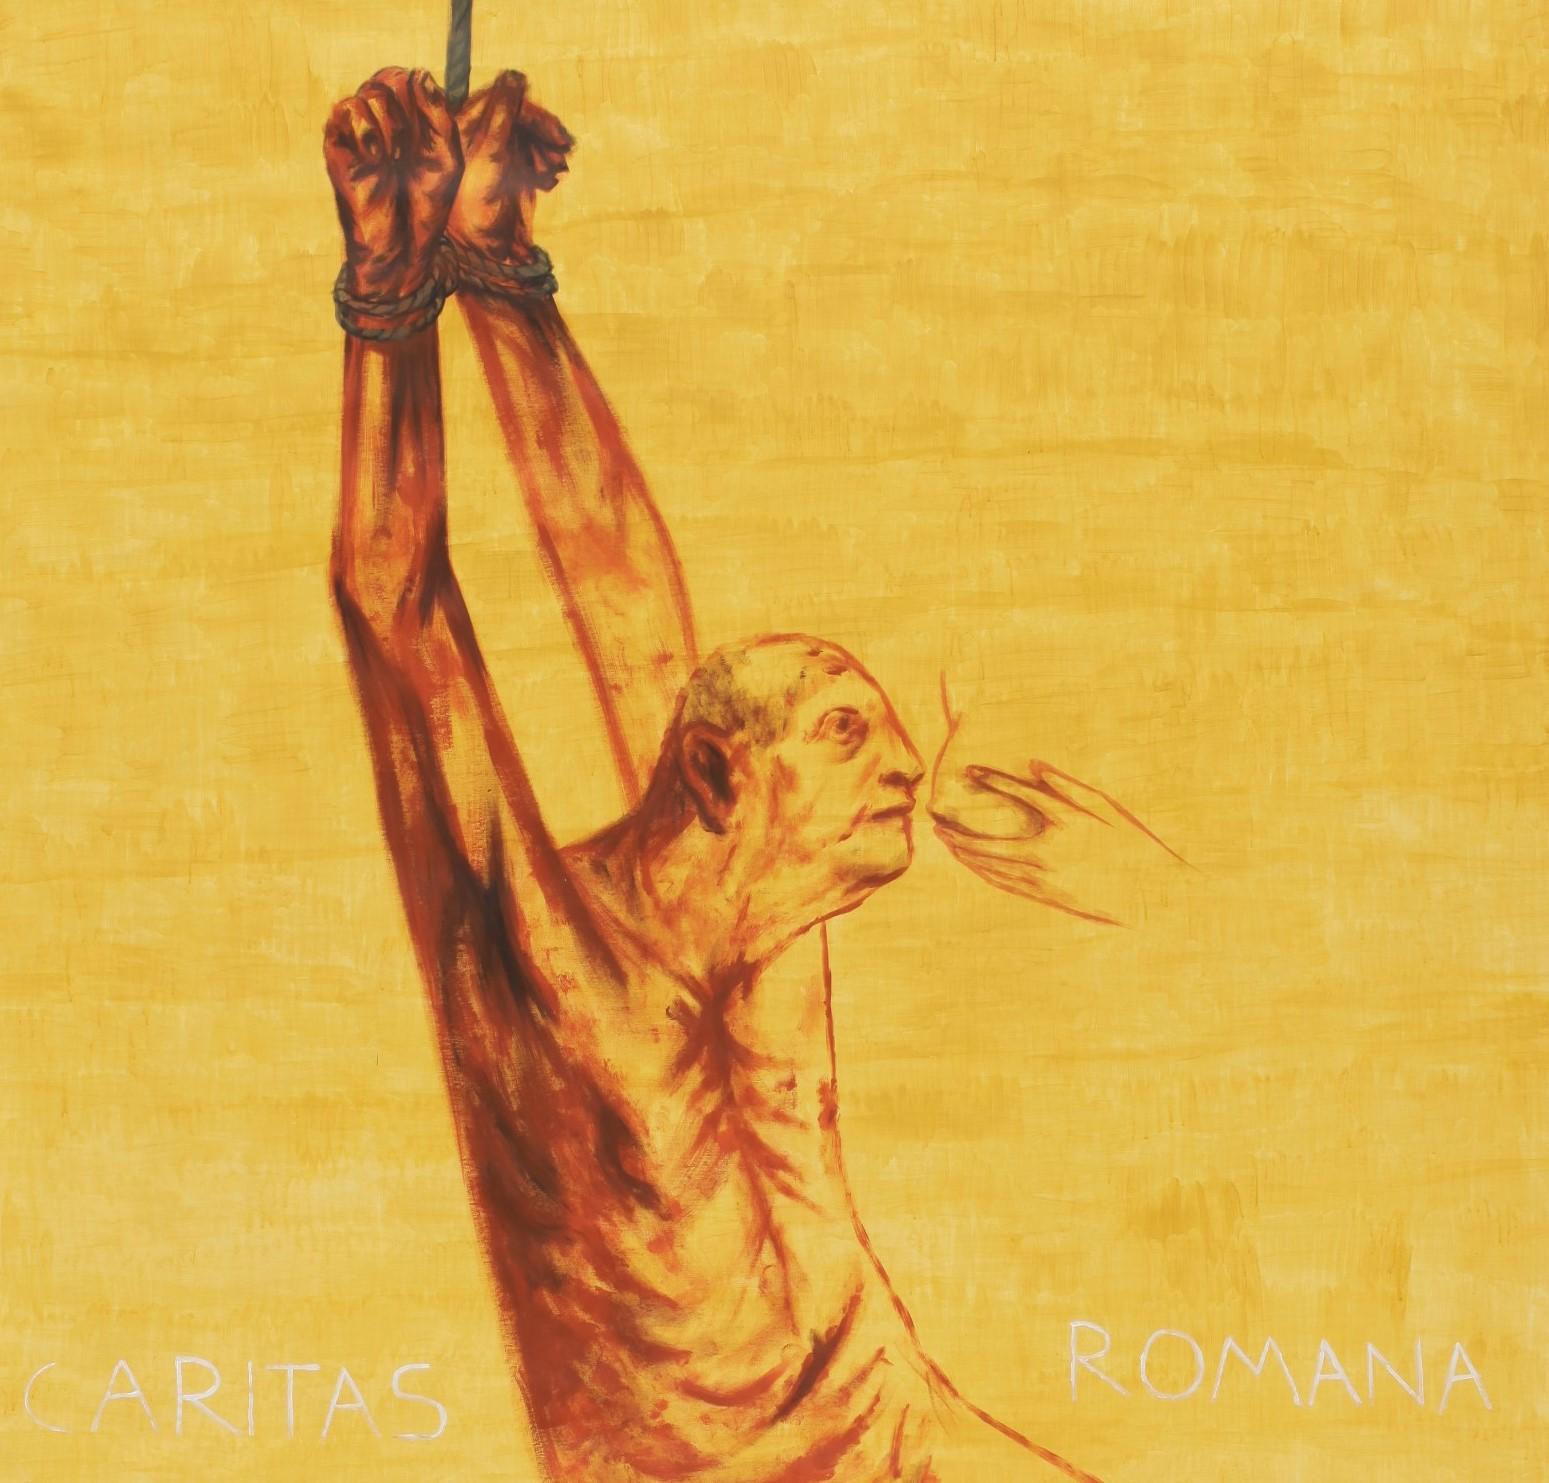 Caritas Romana – Zeitgenössisch, Mann, Fütterung, Gelb, 21. Jahrhundert (Orange), Figurative Painting, von Alexandru Rădvan